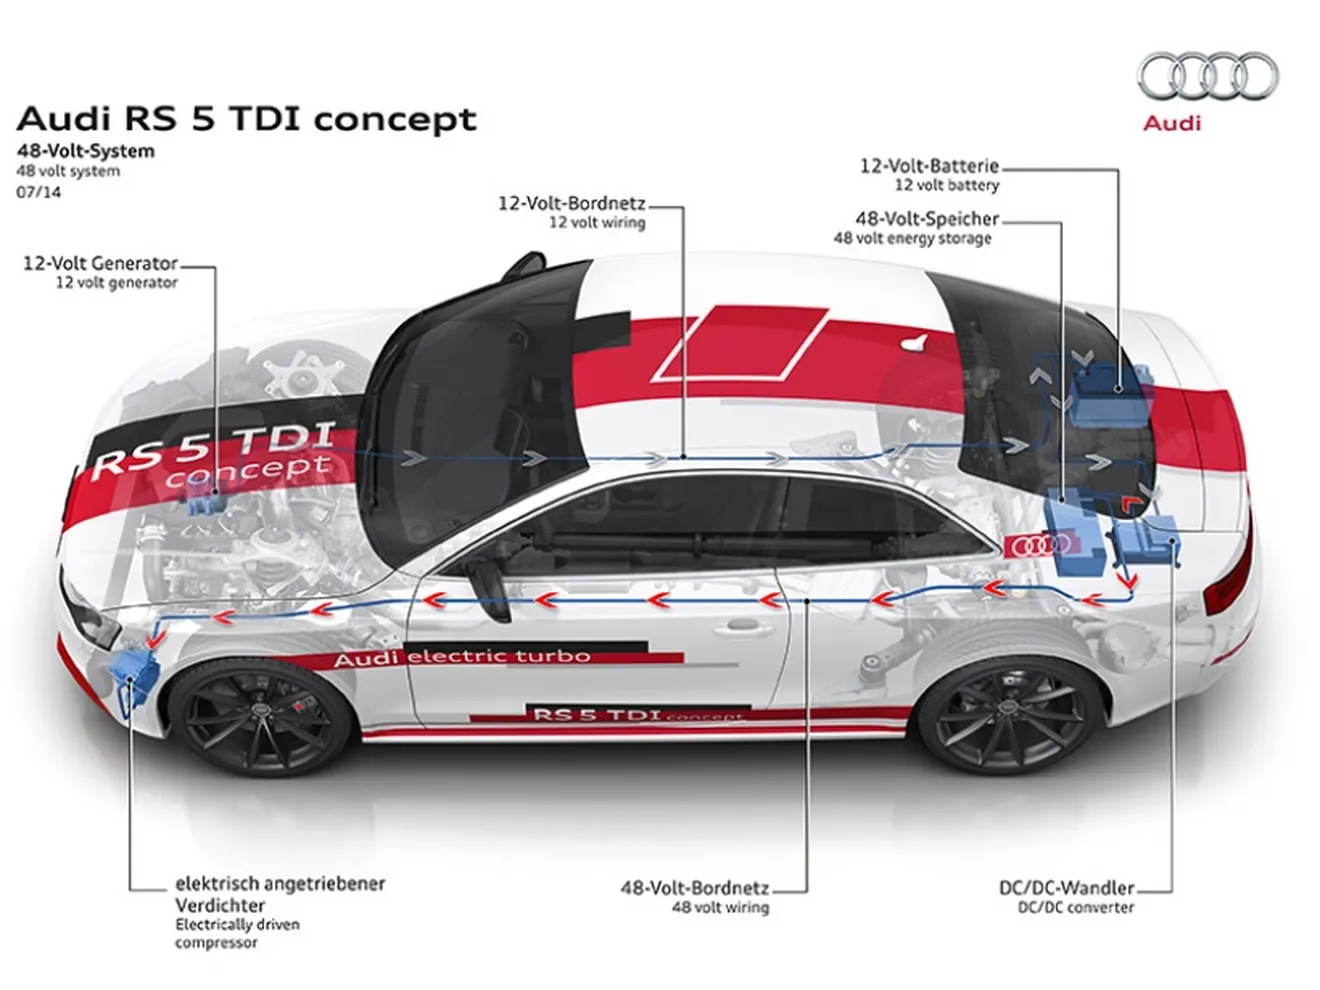 La tecnología de 48 voltios de Audi, más potencia y eficiencia